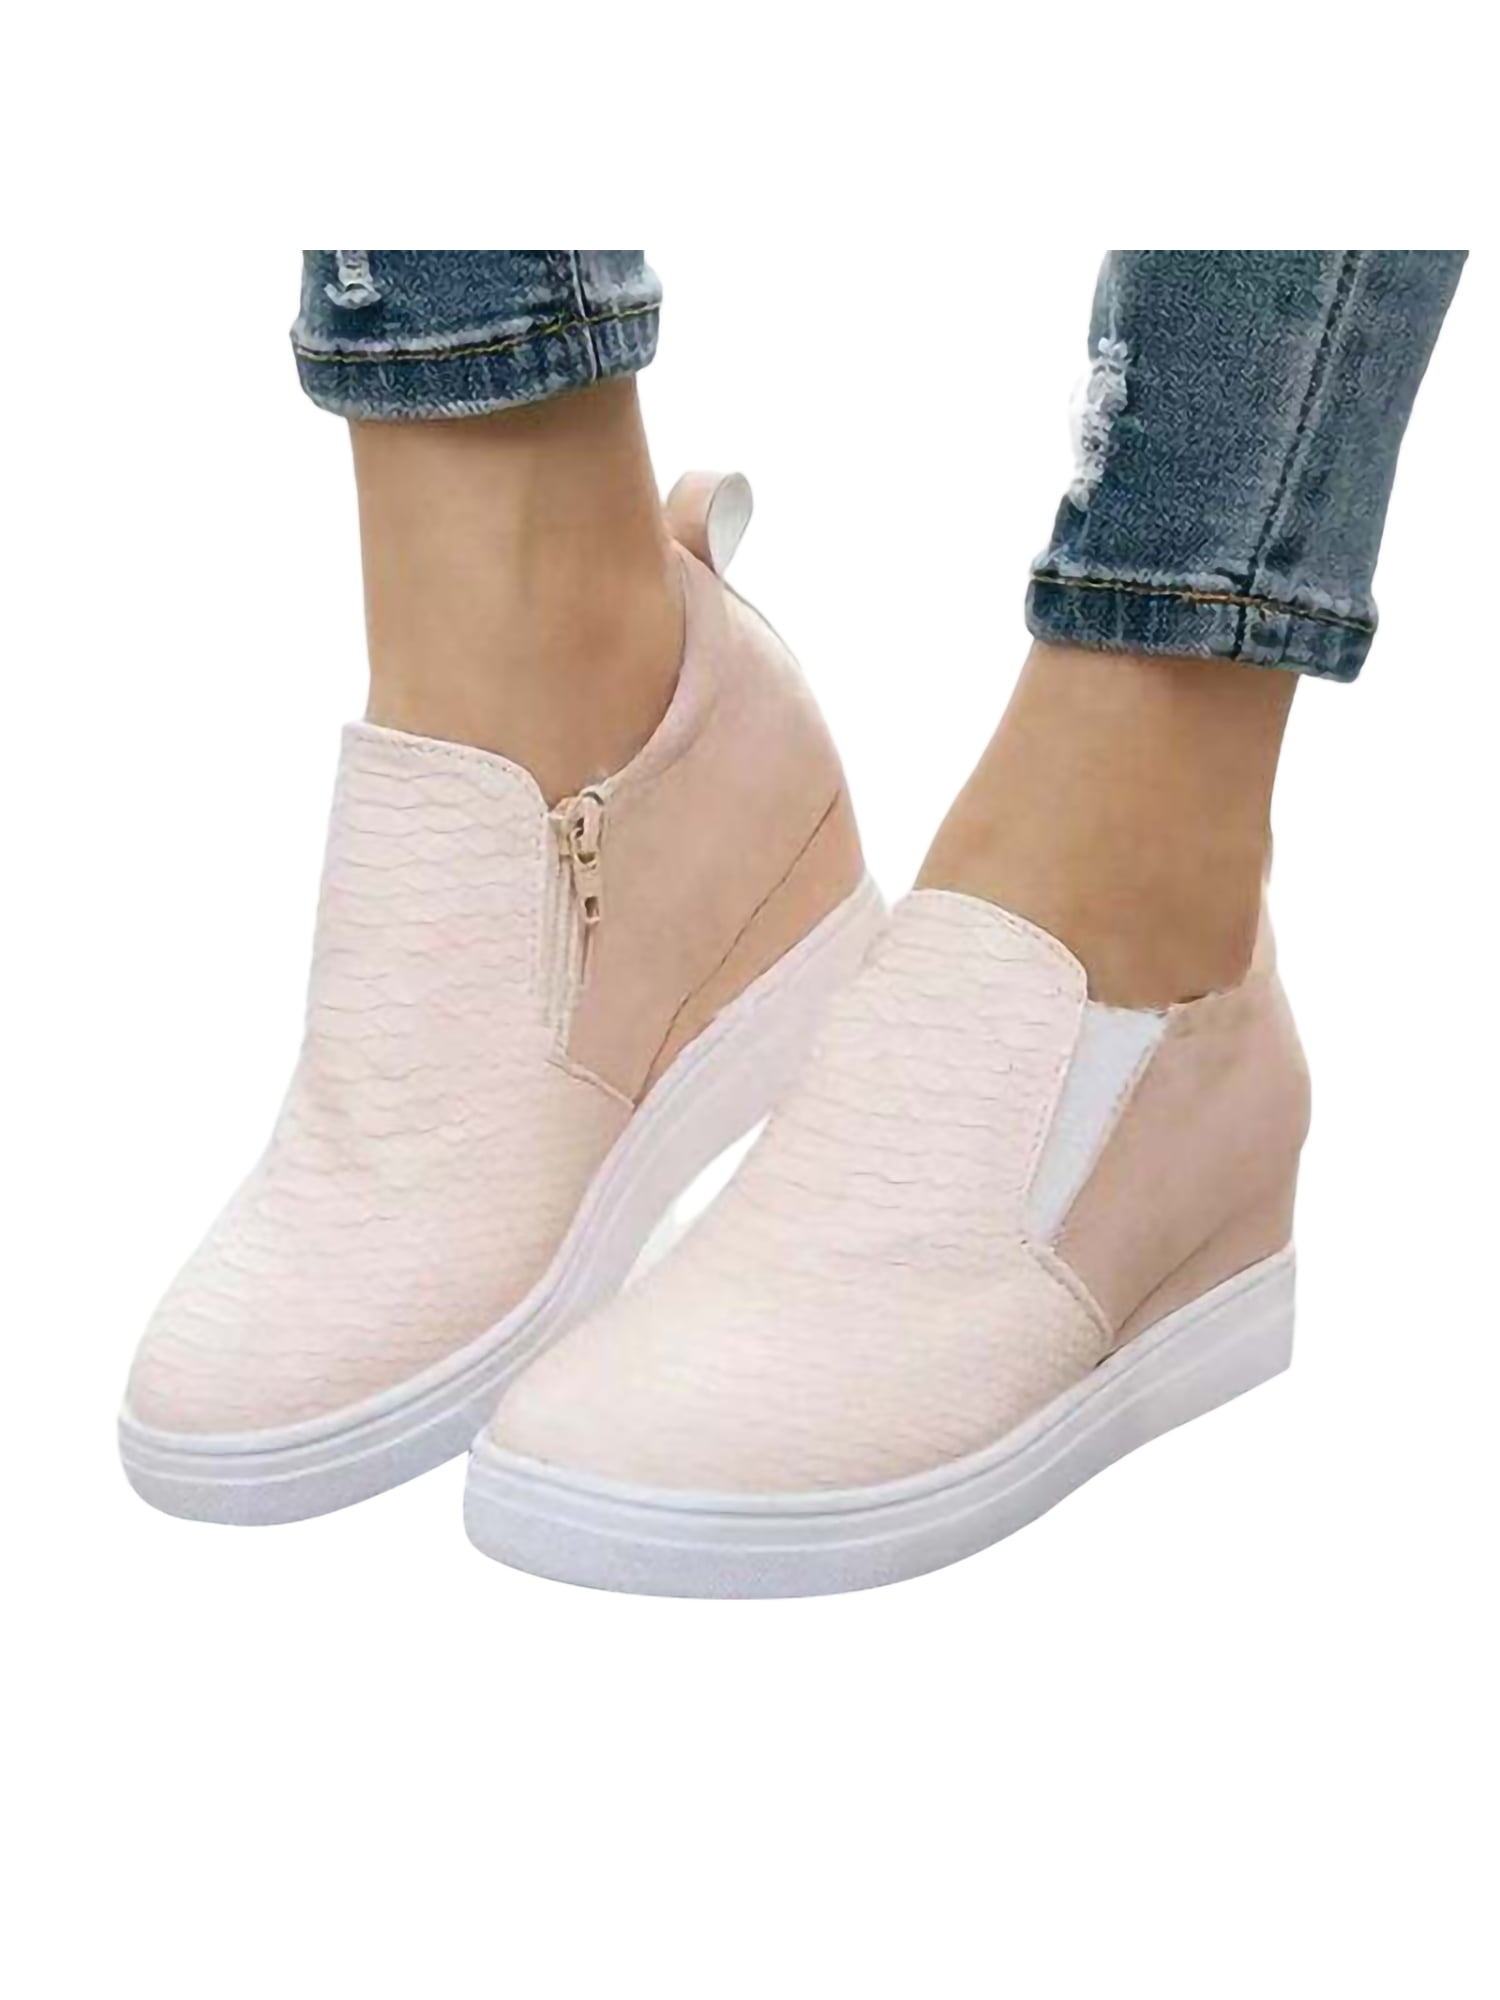 Women's Lace Creepers High Platform Sneakers Hidden Heel Shoes Wedge Heel Pumps 